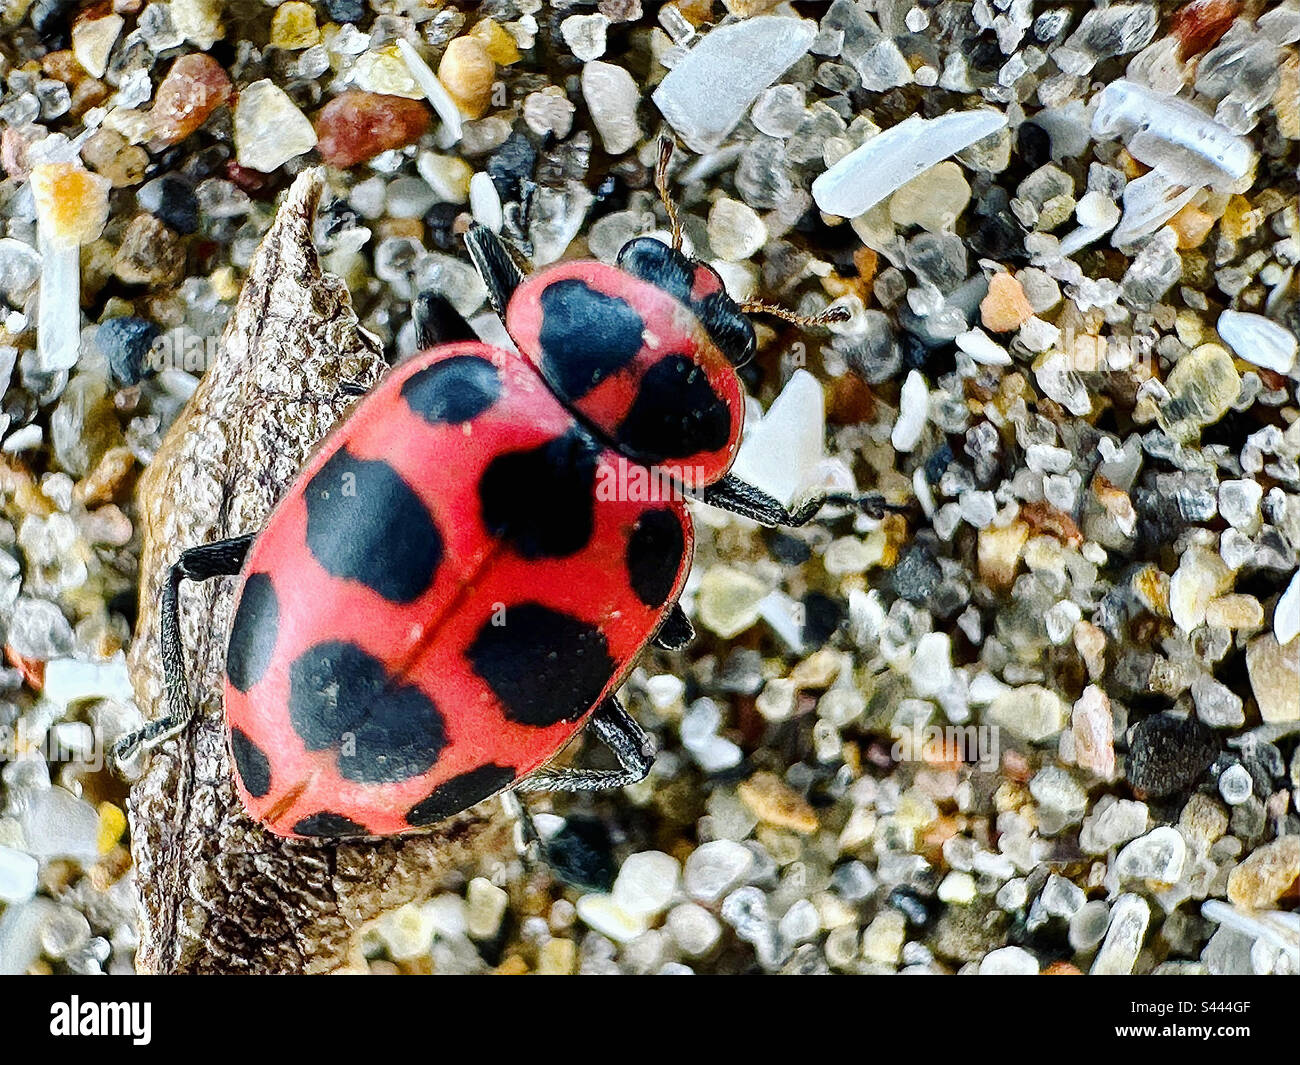 Ladybug up close Stock Photo